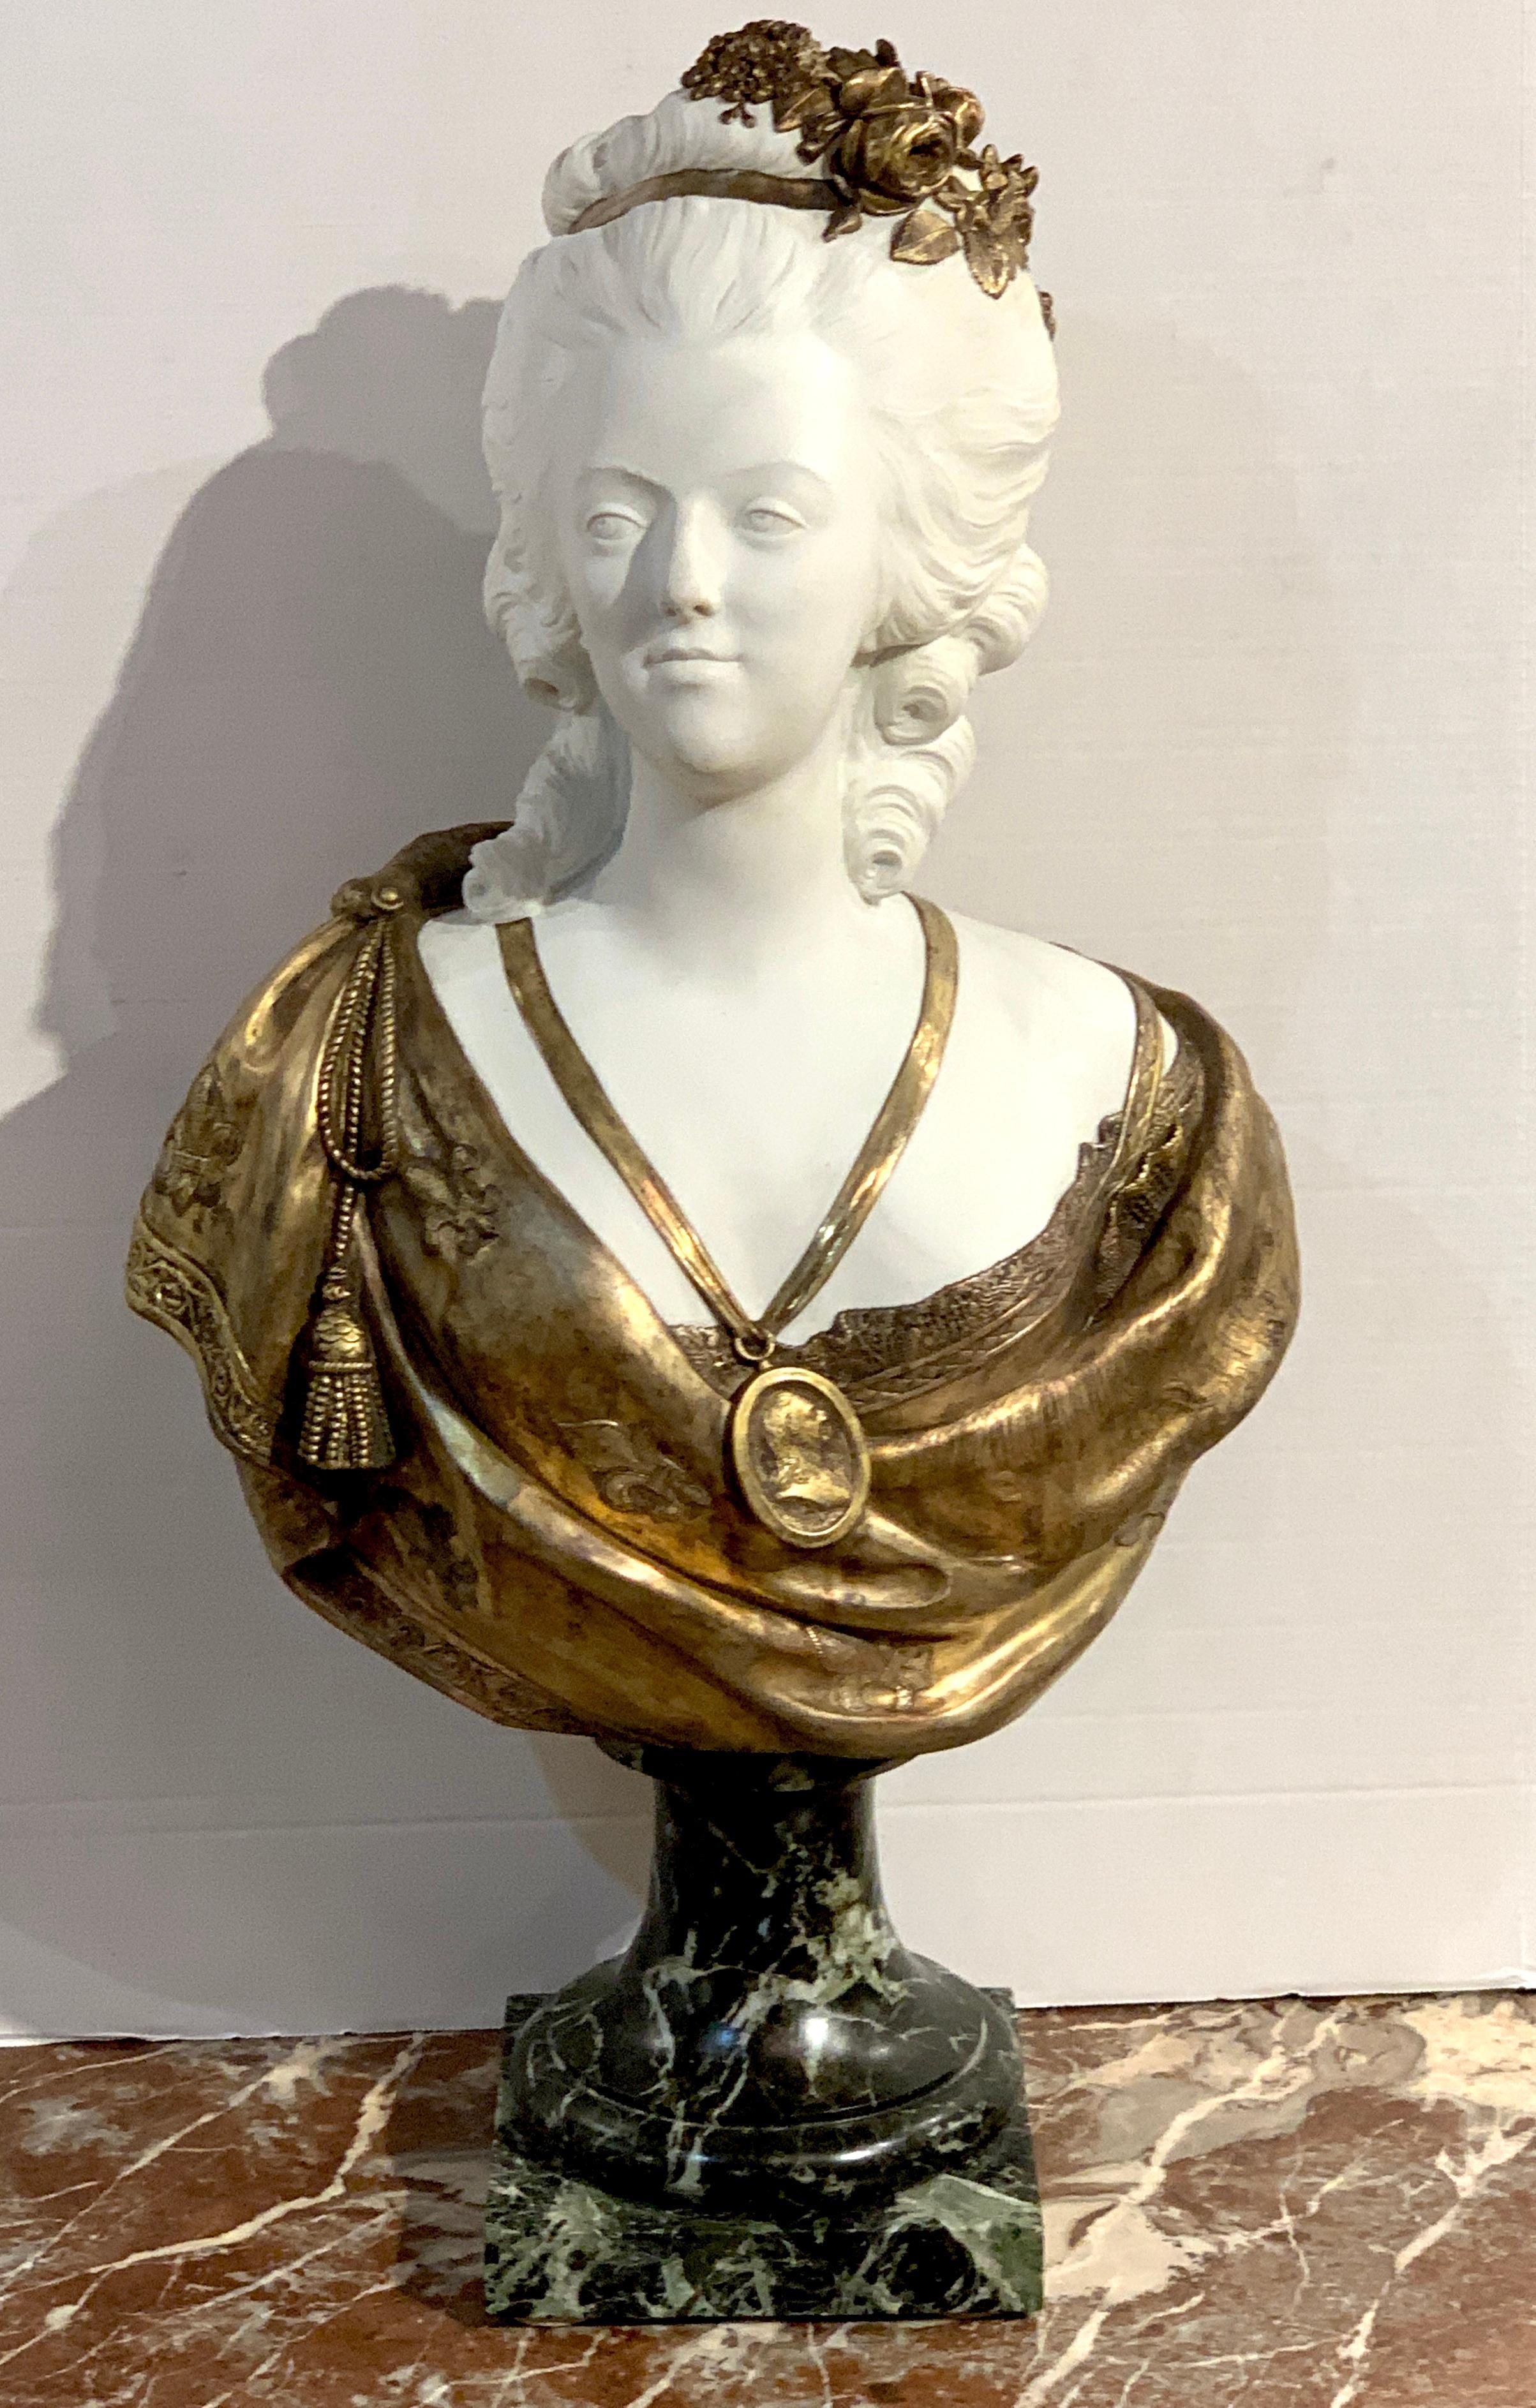 Buste de Marie-Antoinette en porcelaine de Sèvres (attribuée), en biscuit et bronze doré, d'après Félix Lecomte (sculpteur français 1737-1817). Le visage est en biscuit blanc, la robe et les bijoux en bronze doré, le tout reposant sur une base